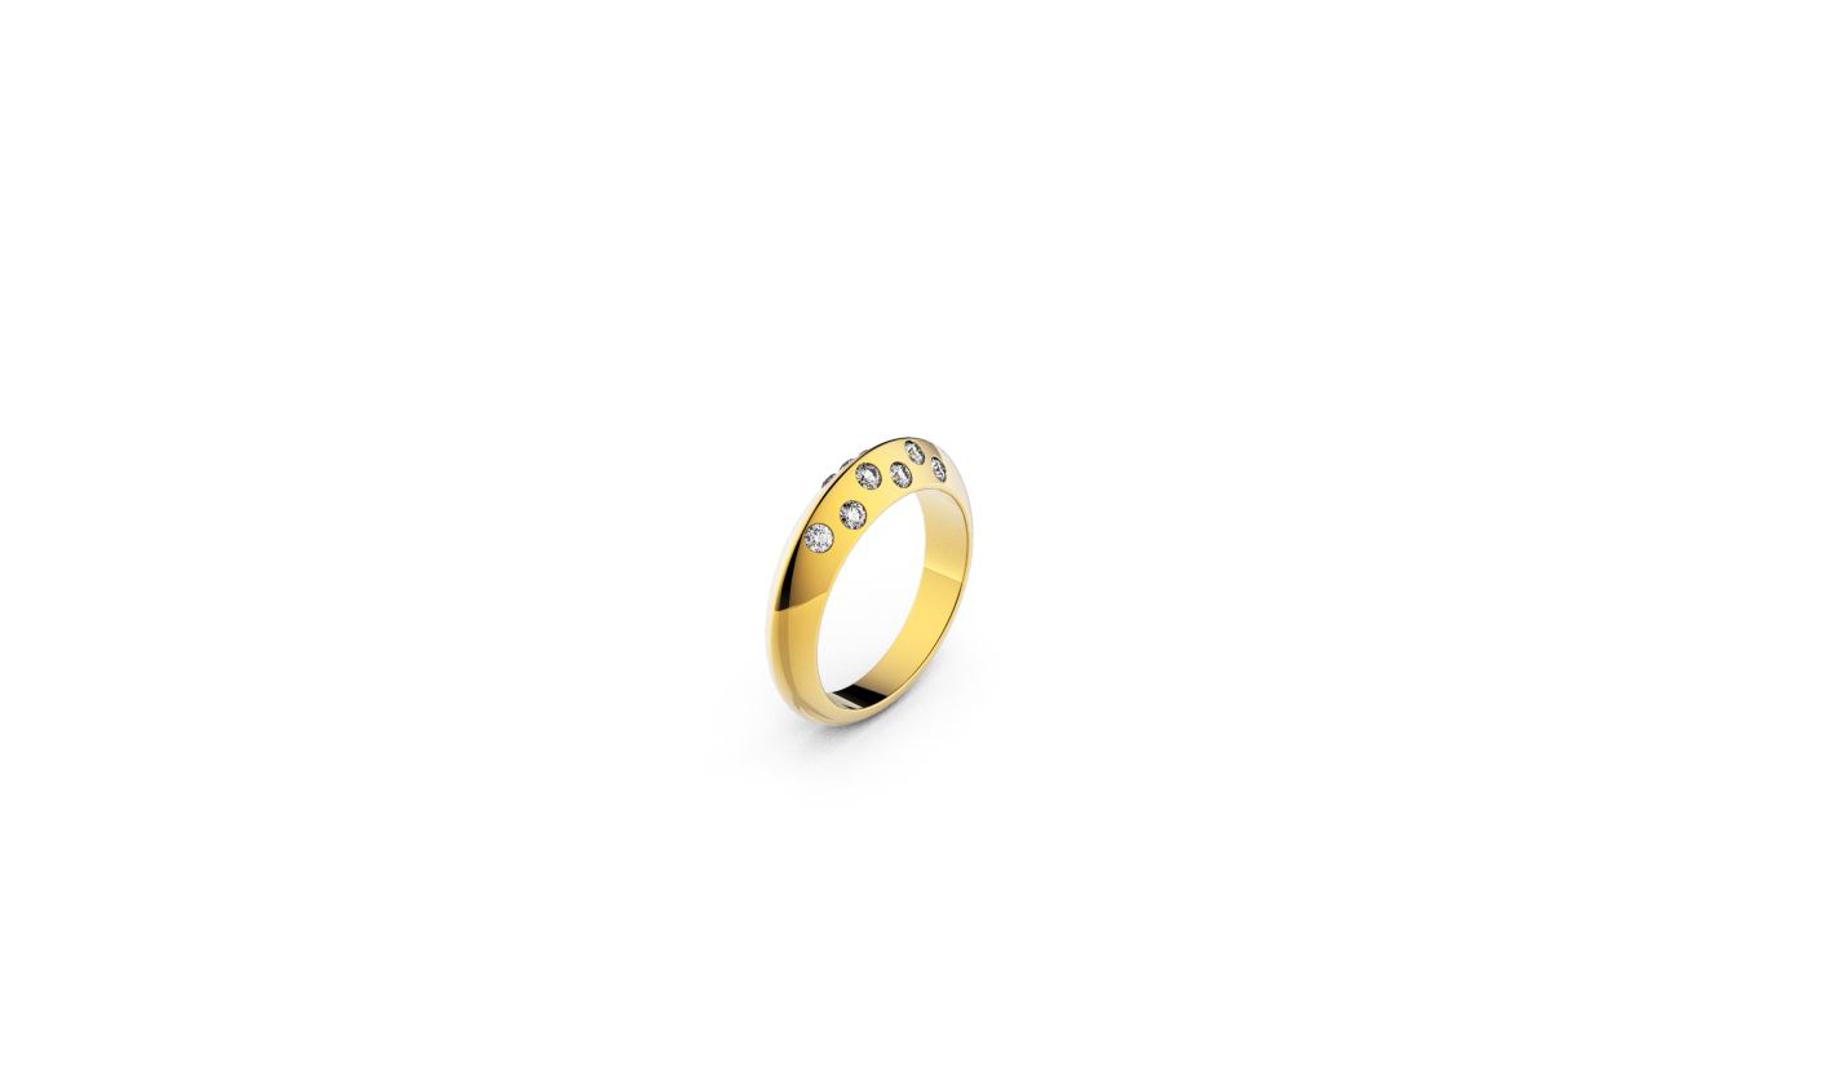 Zlatni prsten, red.cijena 1215kn, sada 789,75kn - ZAKS